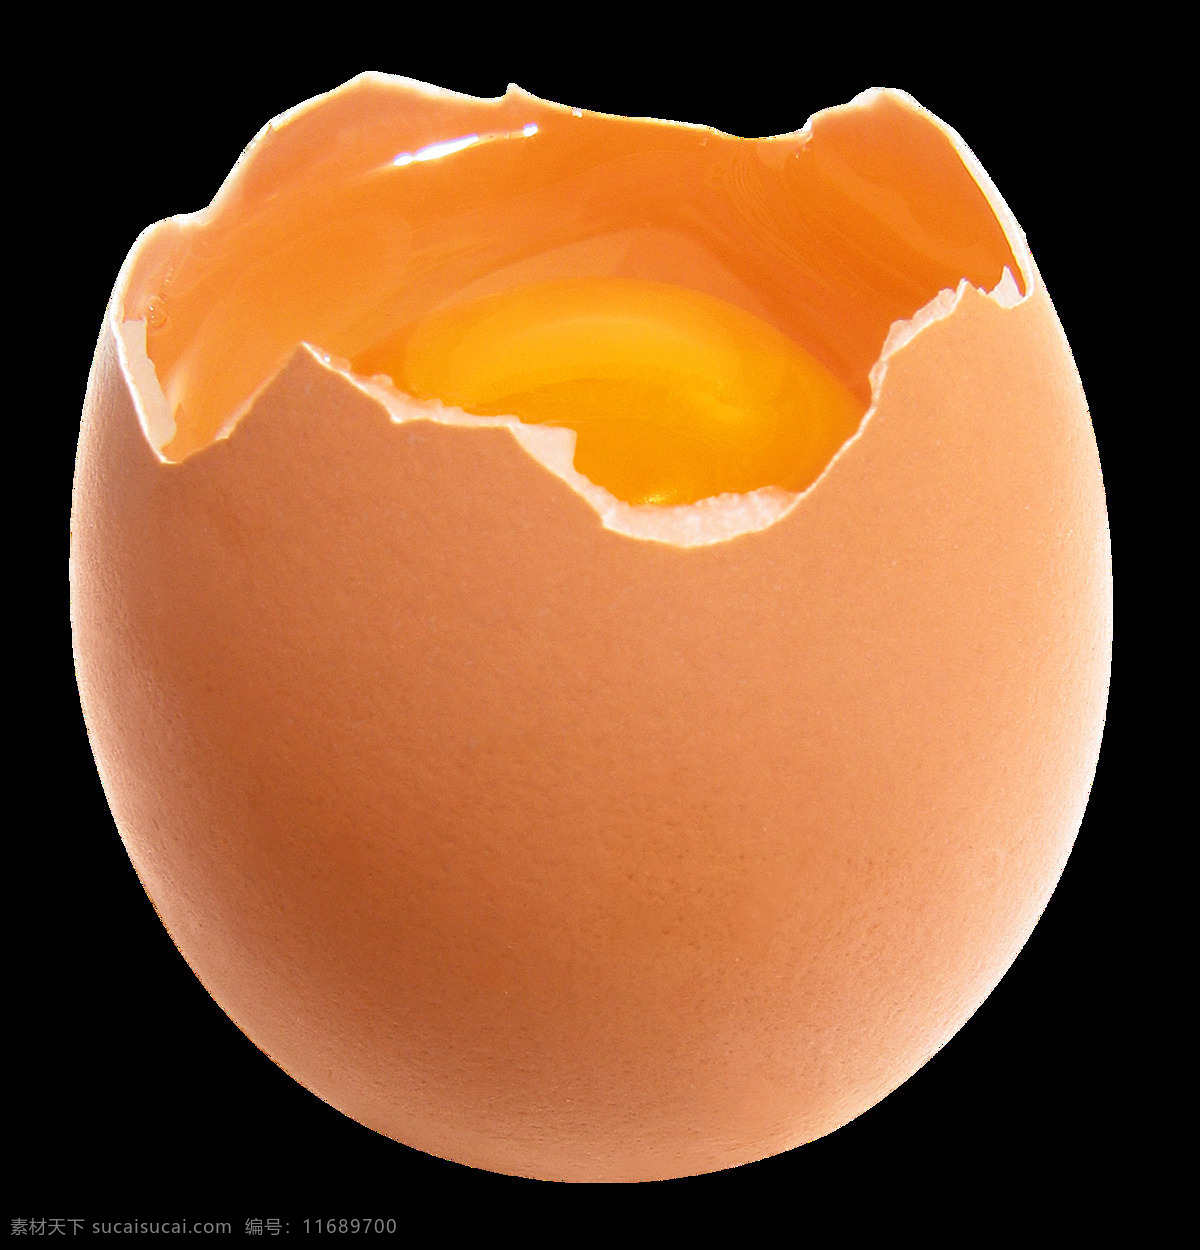 鸡蛋图片 鸡蛋 蛋 蛋黄 蛋清 png图 透明图 免扣图 透明背景 透明底 抠图